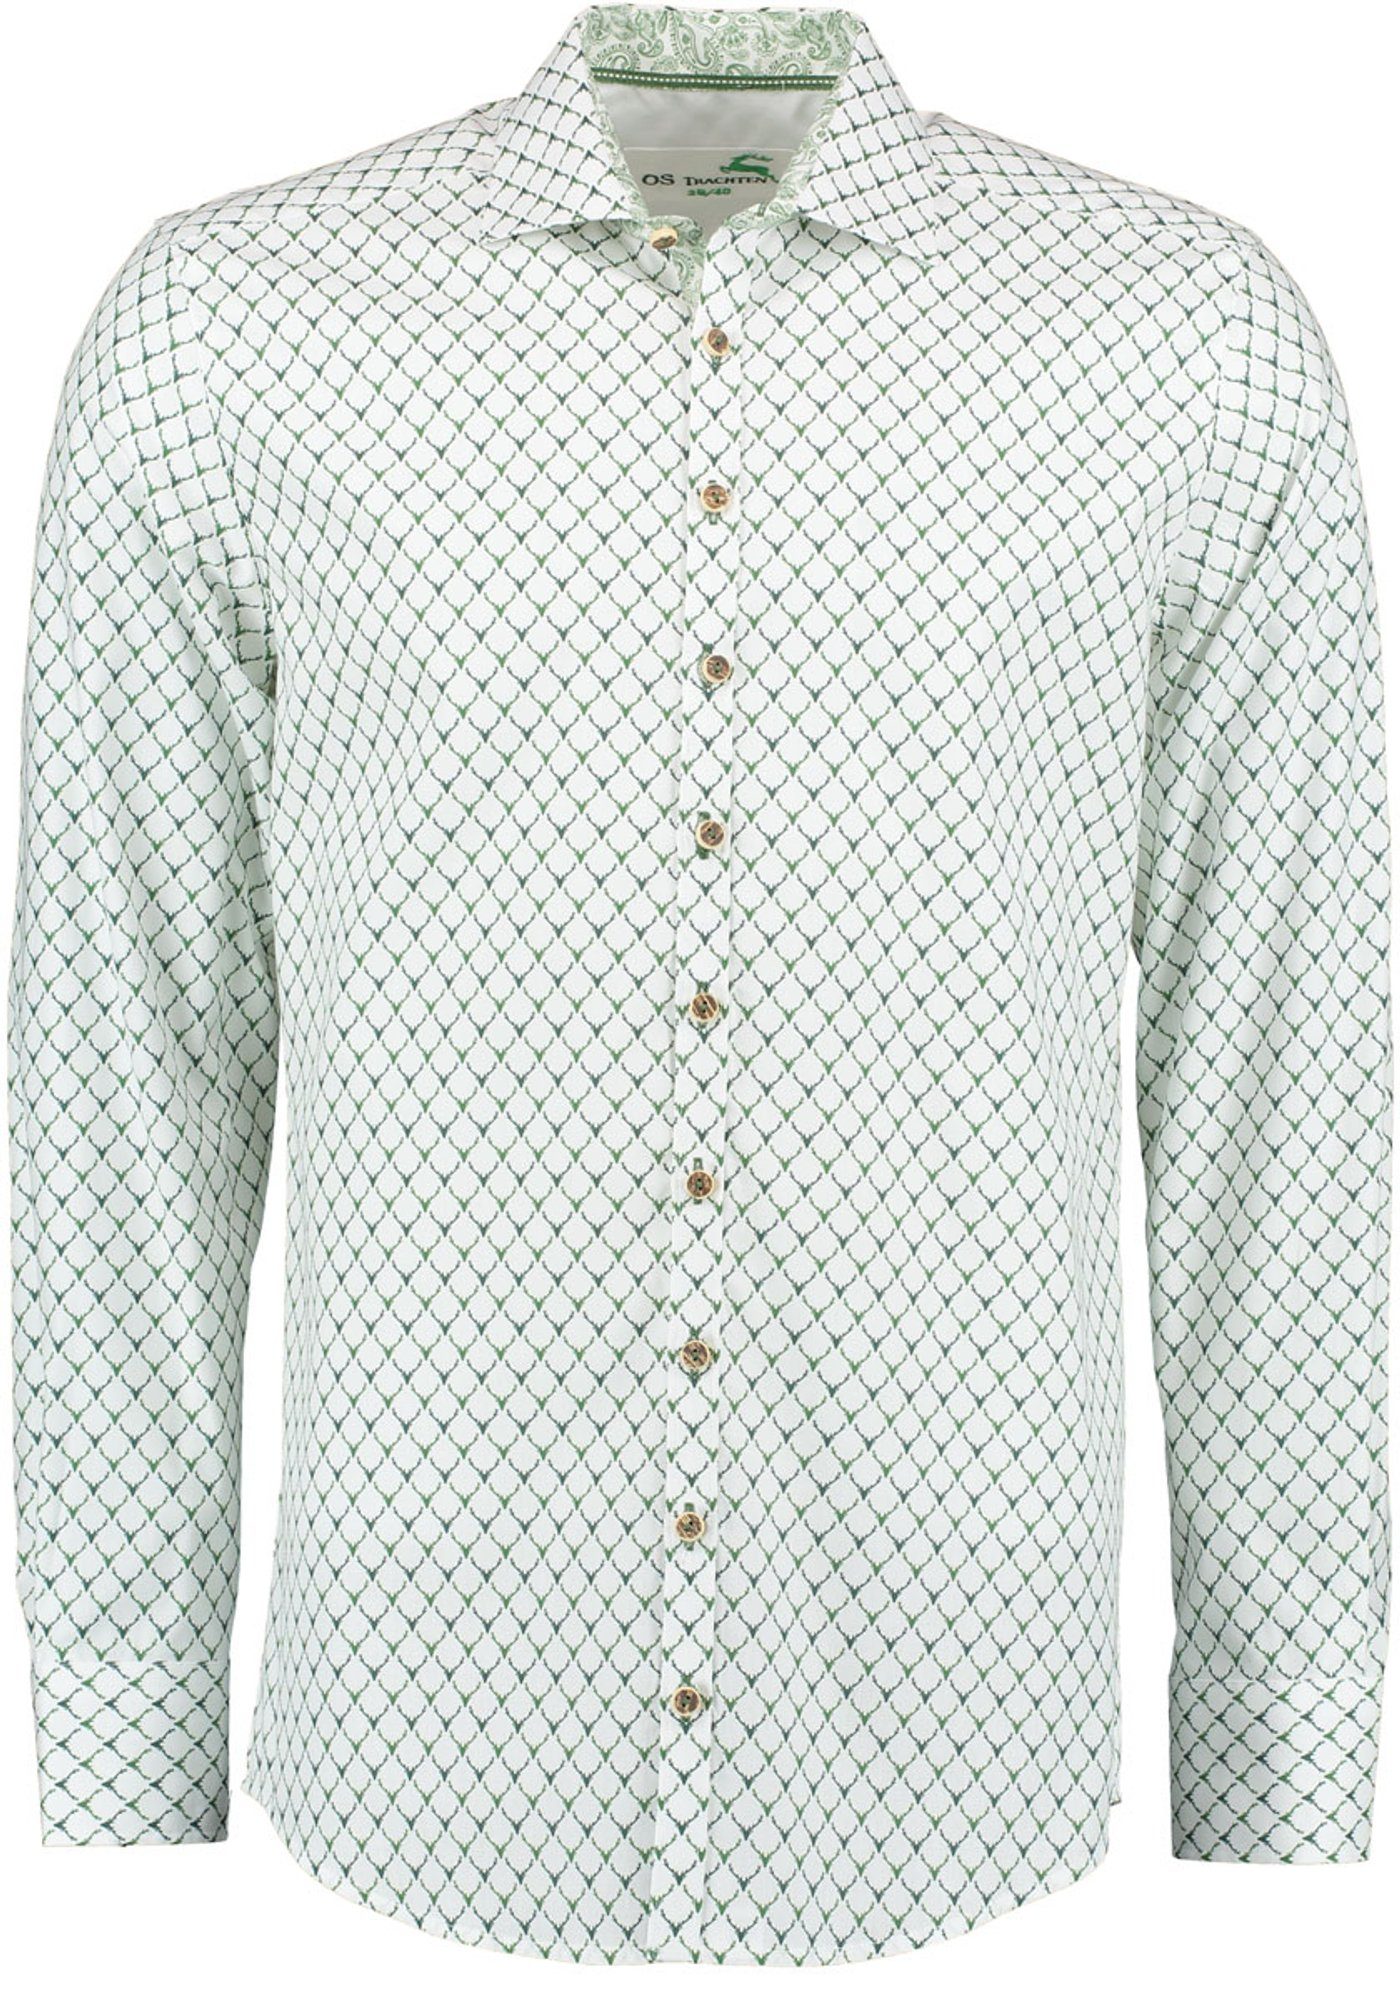 Trachtenhemd Langarmhemd Kedase mit OS-Trachten Allover-Druck dunkelgrün